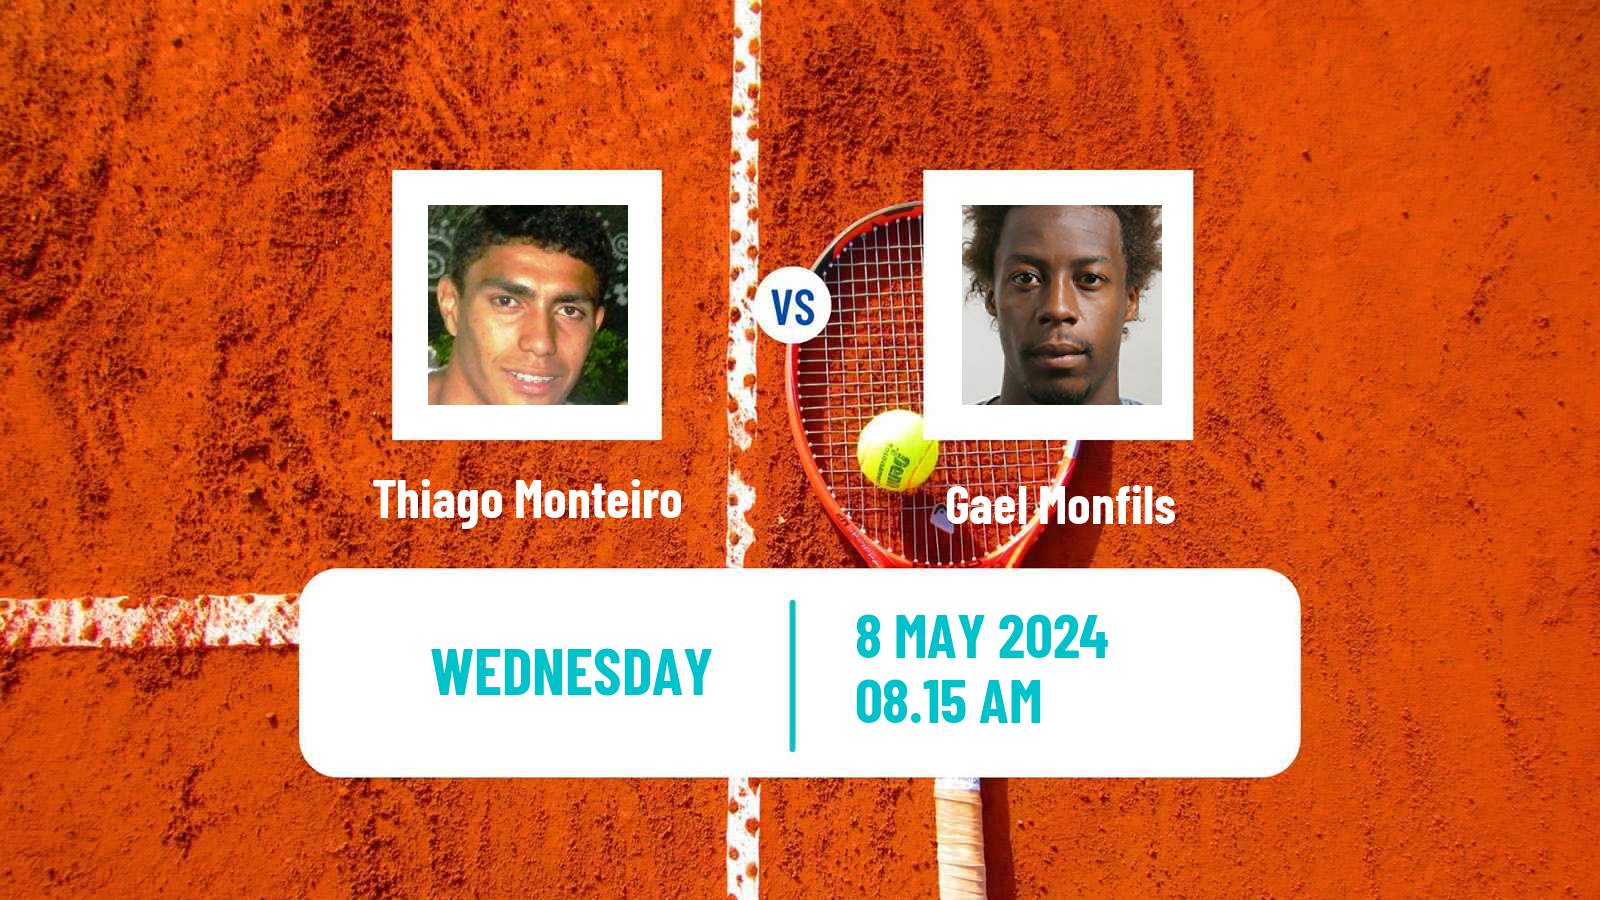 Tennis ATP Roma Thiago Monteiro - Gael Monfils